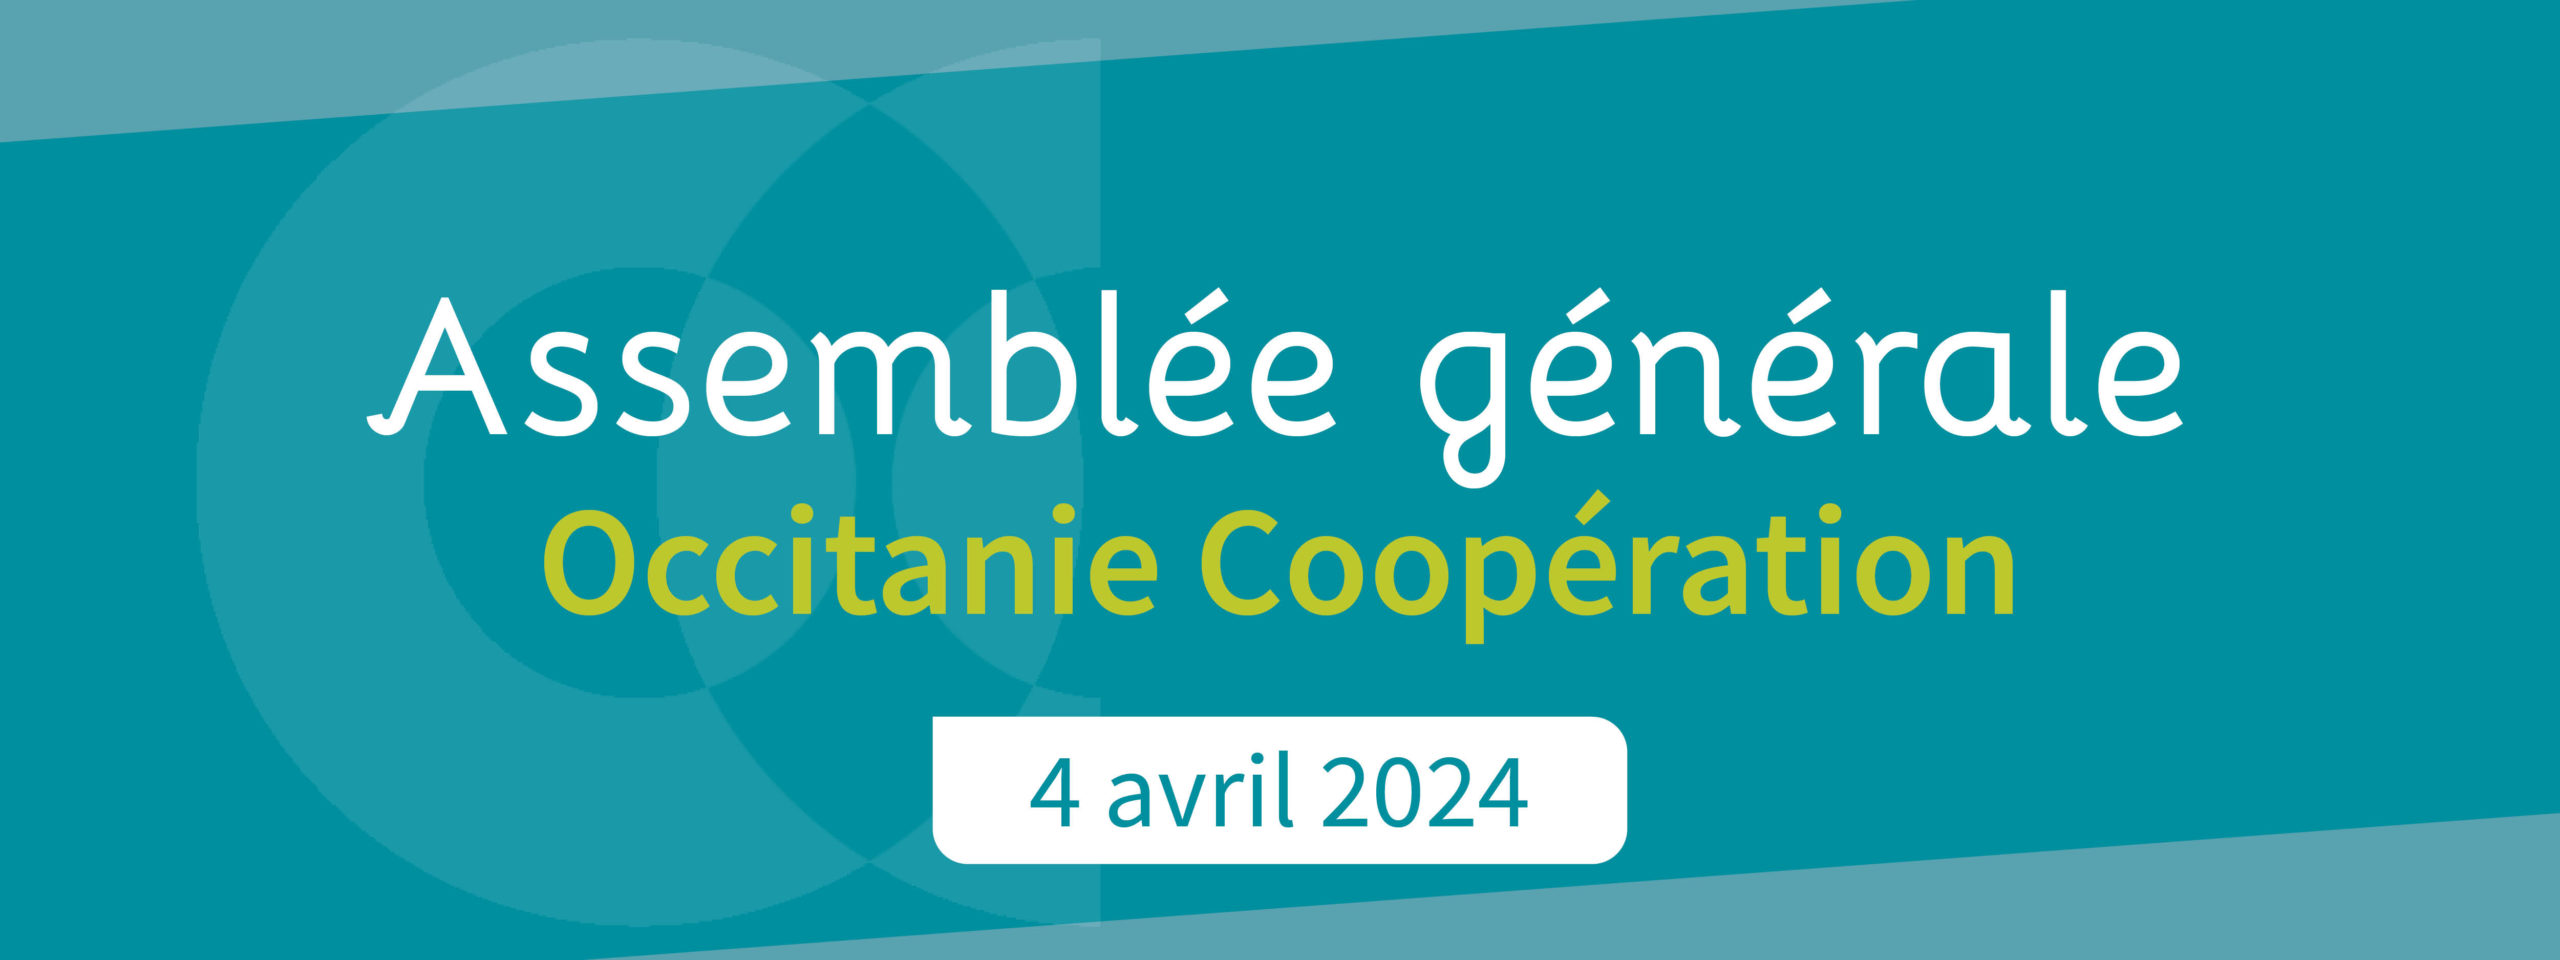 Inscrivez-vous à l’Assemblée générale d’Occitanie Coopération : 4 avril 2024